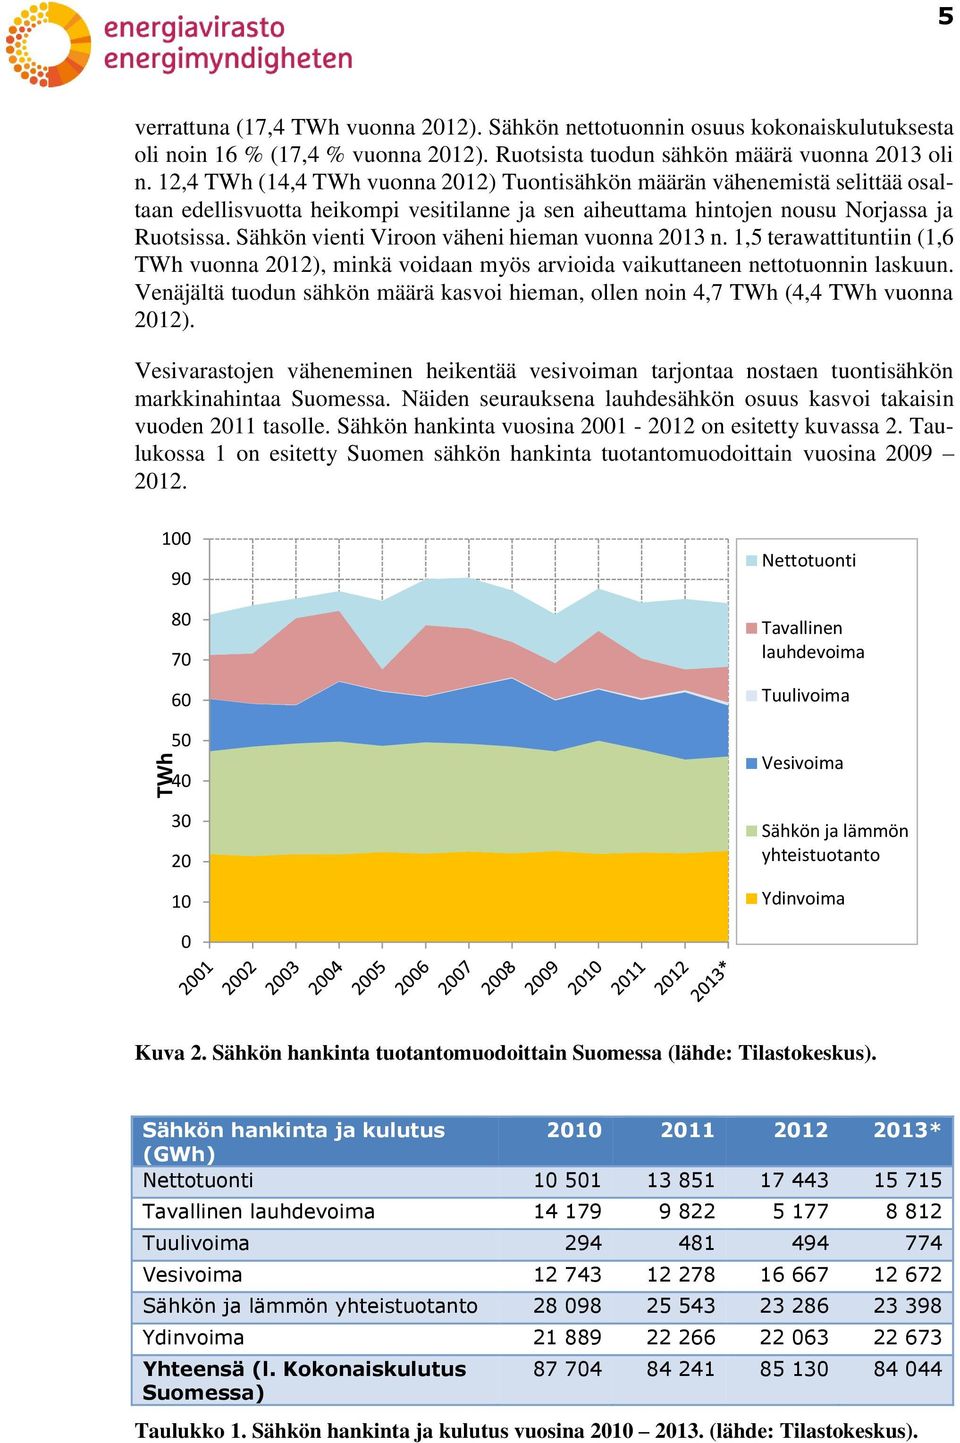 Sähkön vienti Viroon väheni hieman vuonna 2013 n. 1,5 terawattituntiin (1,6 TWh vuonna 2012), minkä voidaan myös arvioida vaikuttaneen nettotuonnin laskuun.